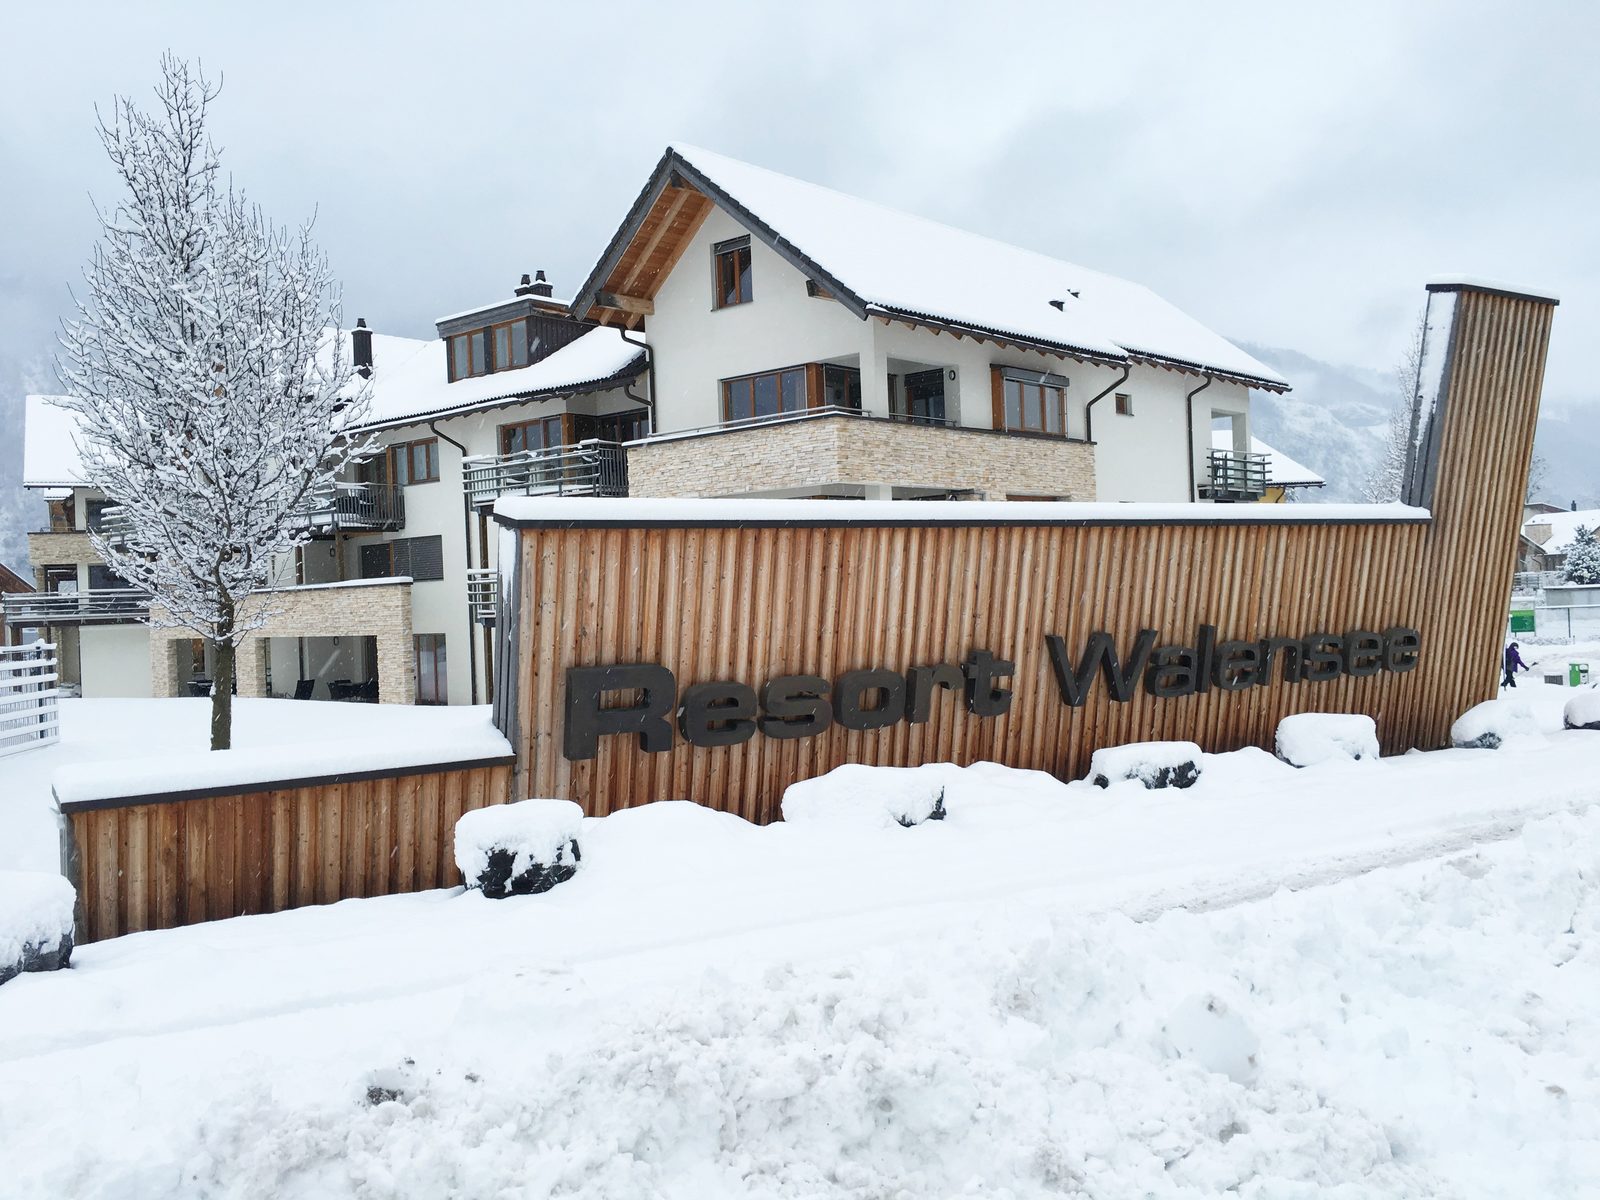 Resort Walensee aan de voet van de Flumserberg Zwitserland is de ideale wintersportlocatie voor het hele gezin.